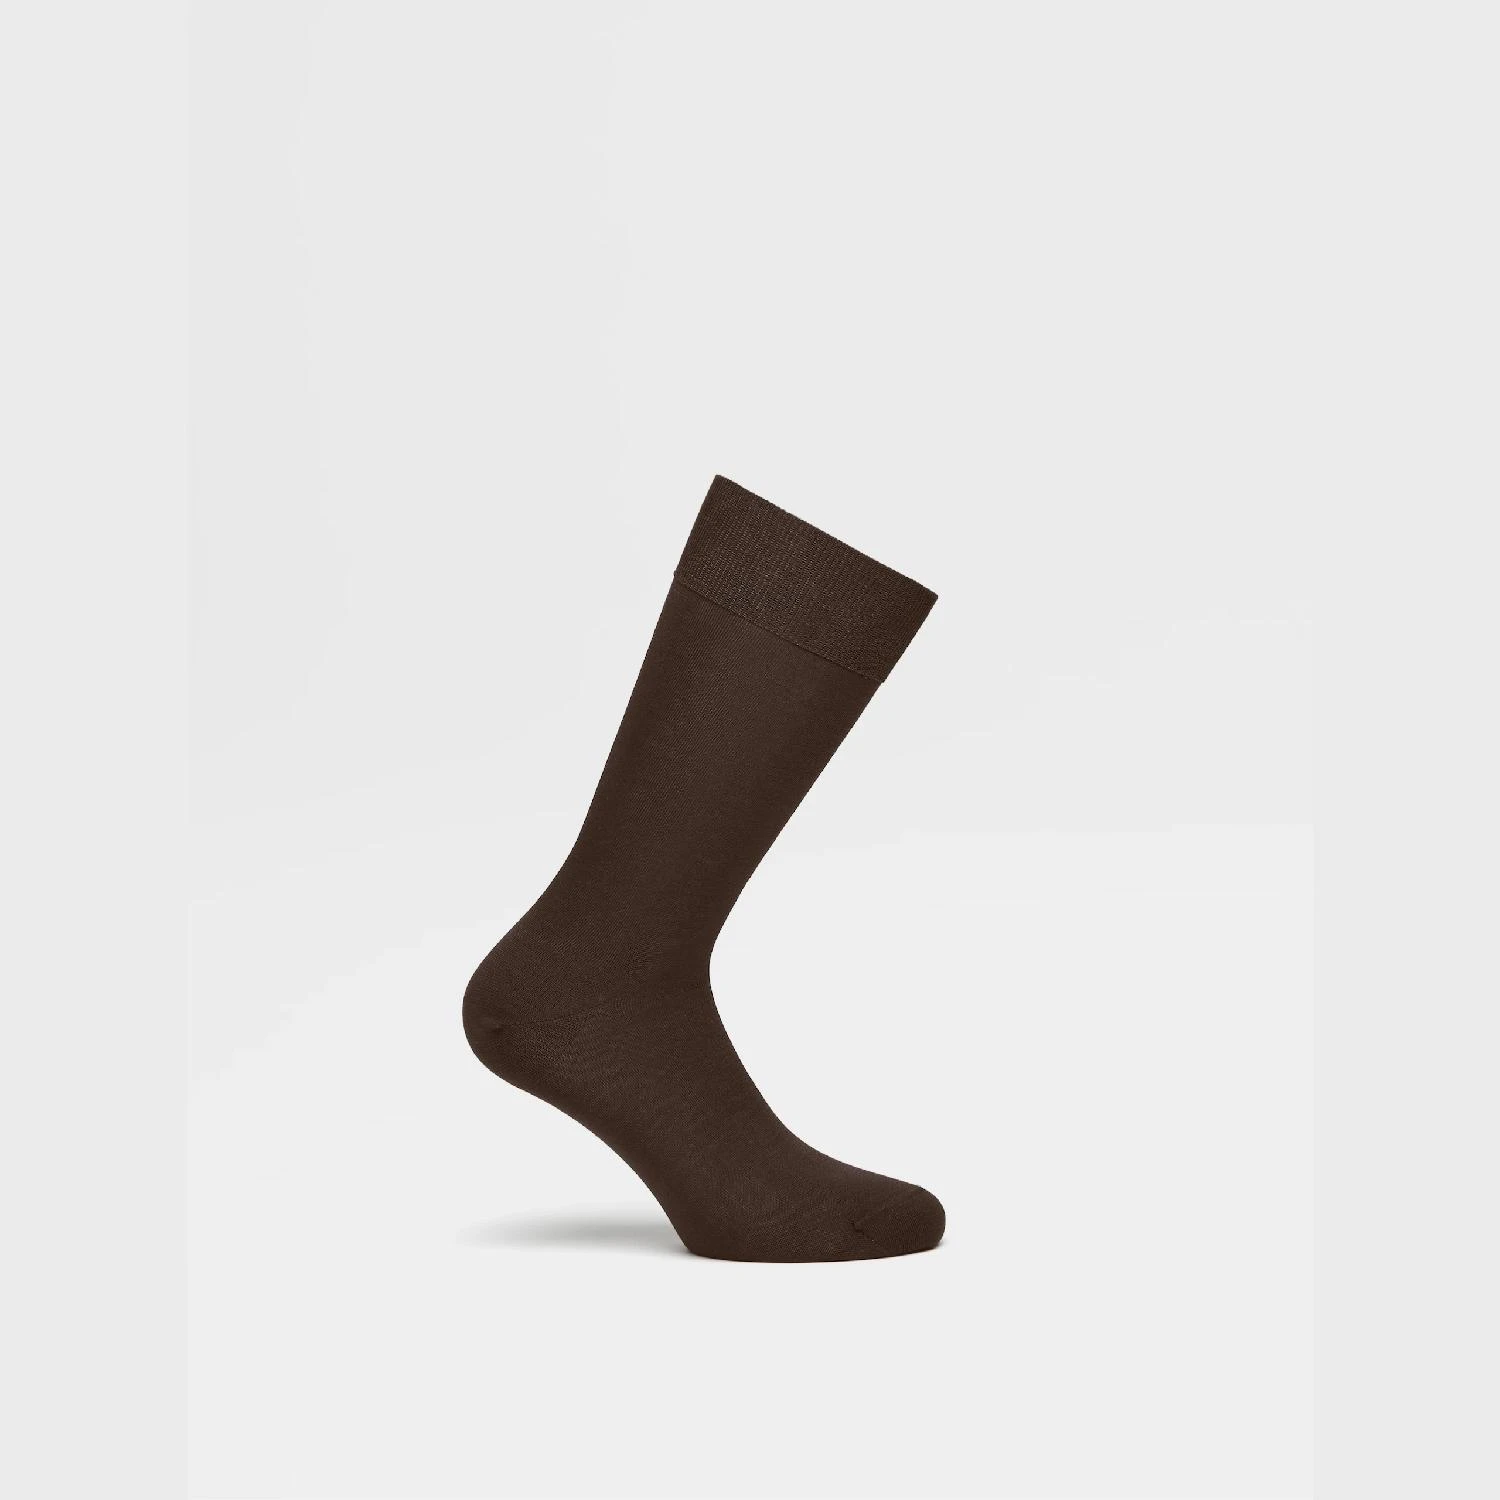 包邮包税【预售7天发货】 ZEGNA杰尼亚 23秋冬 男士 袜子 Brown Cotton Socks N4V40-011-202 商品